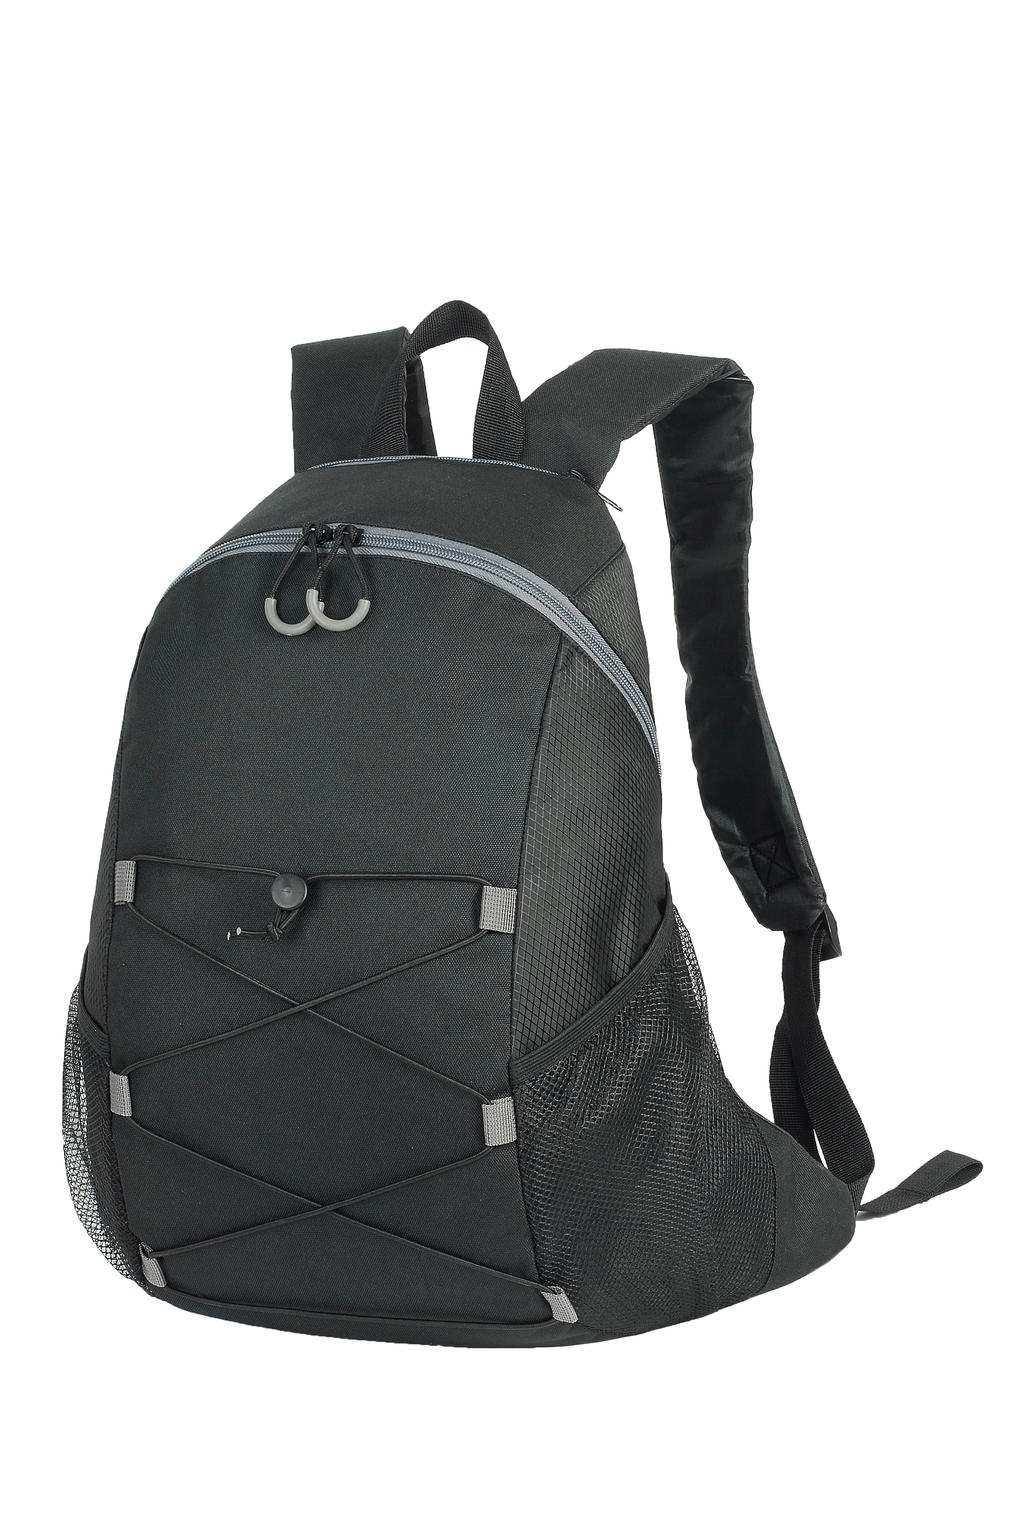  Chester Backpack in Farbe Black/Black